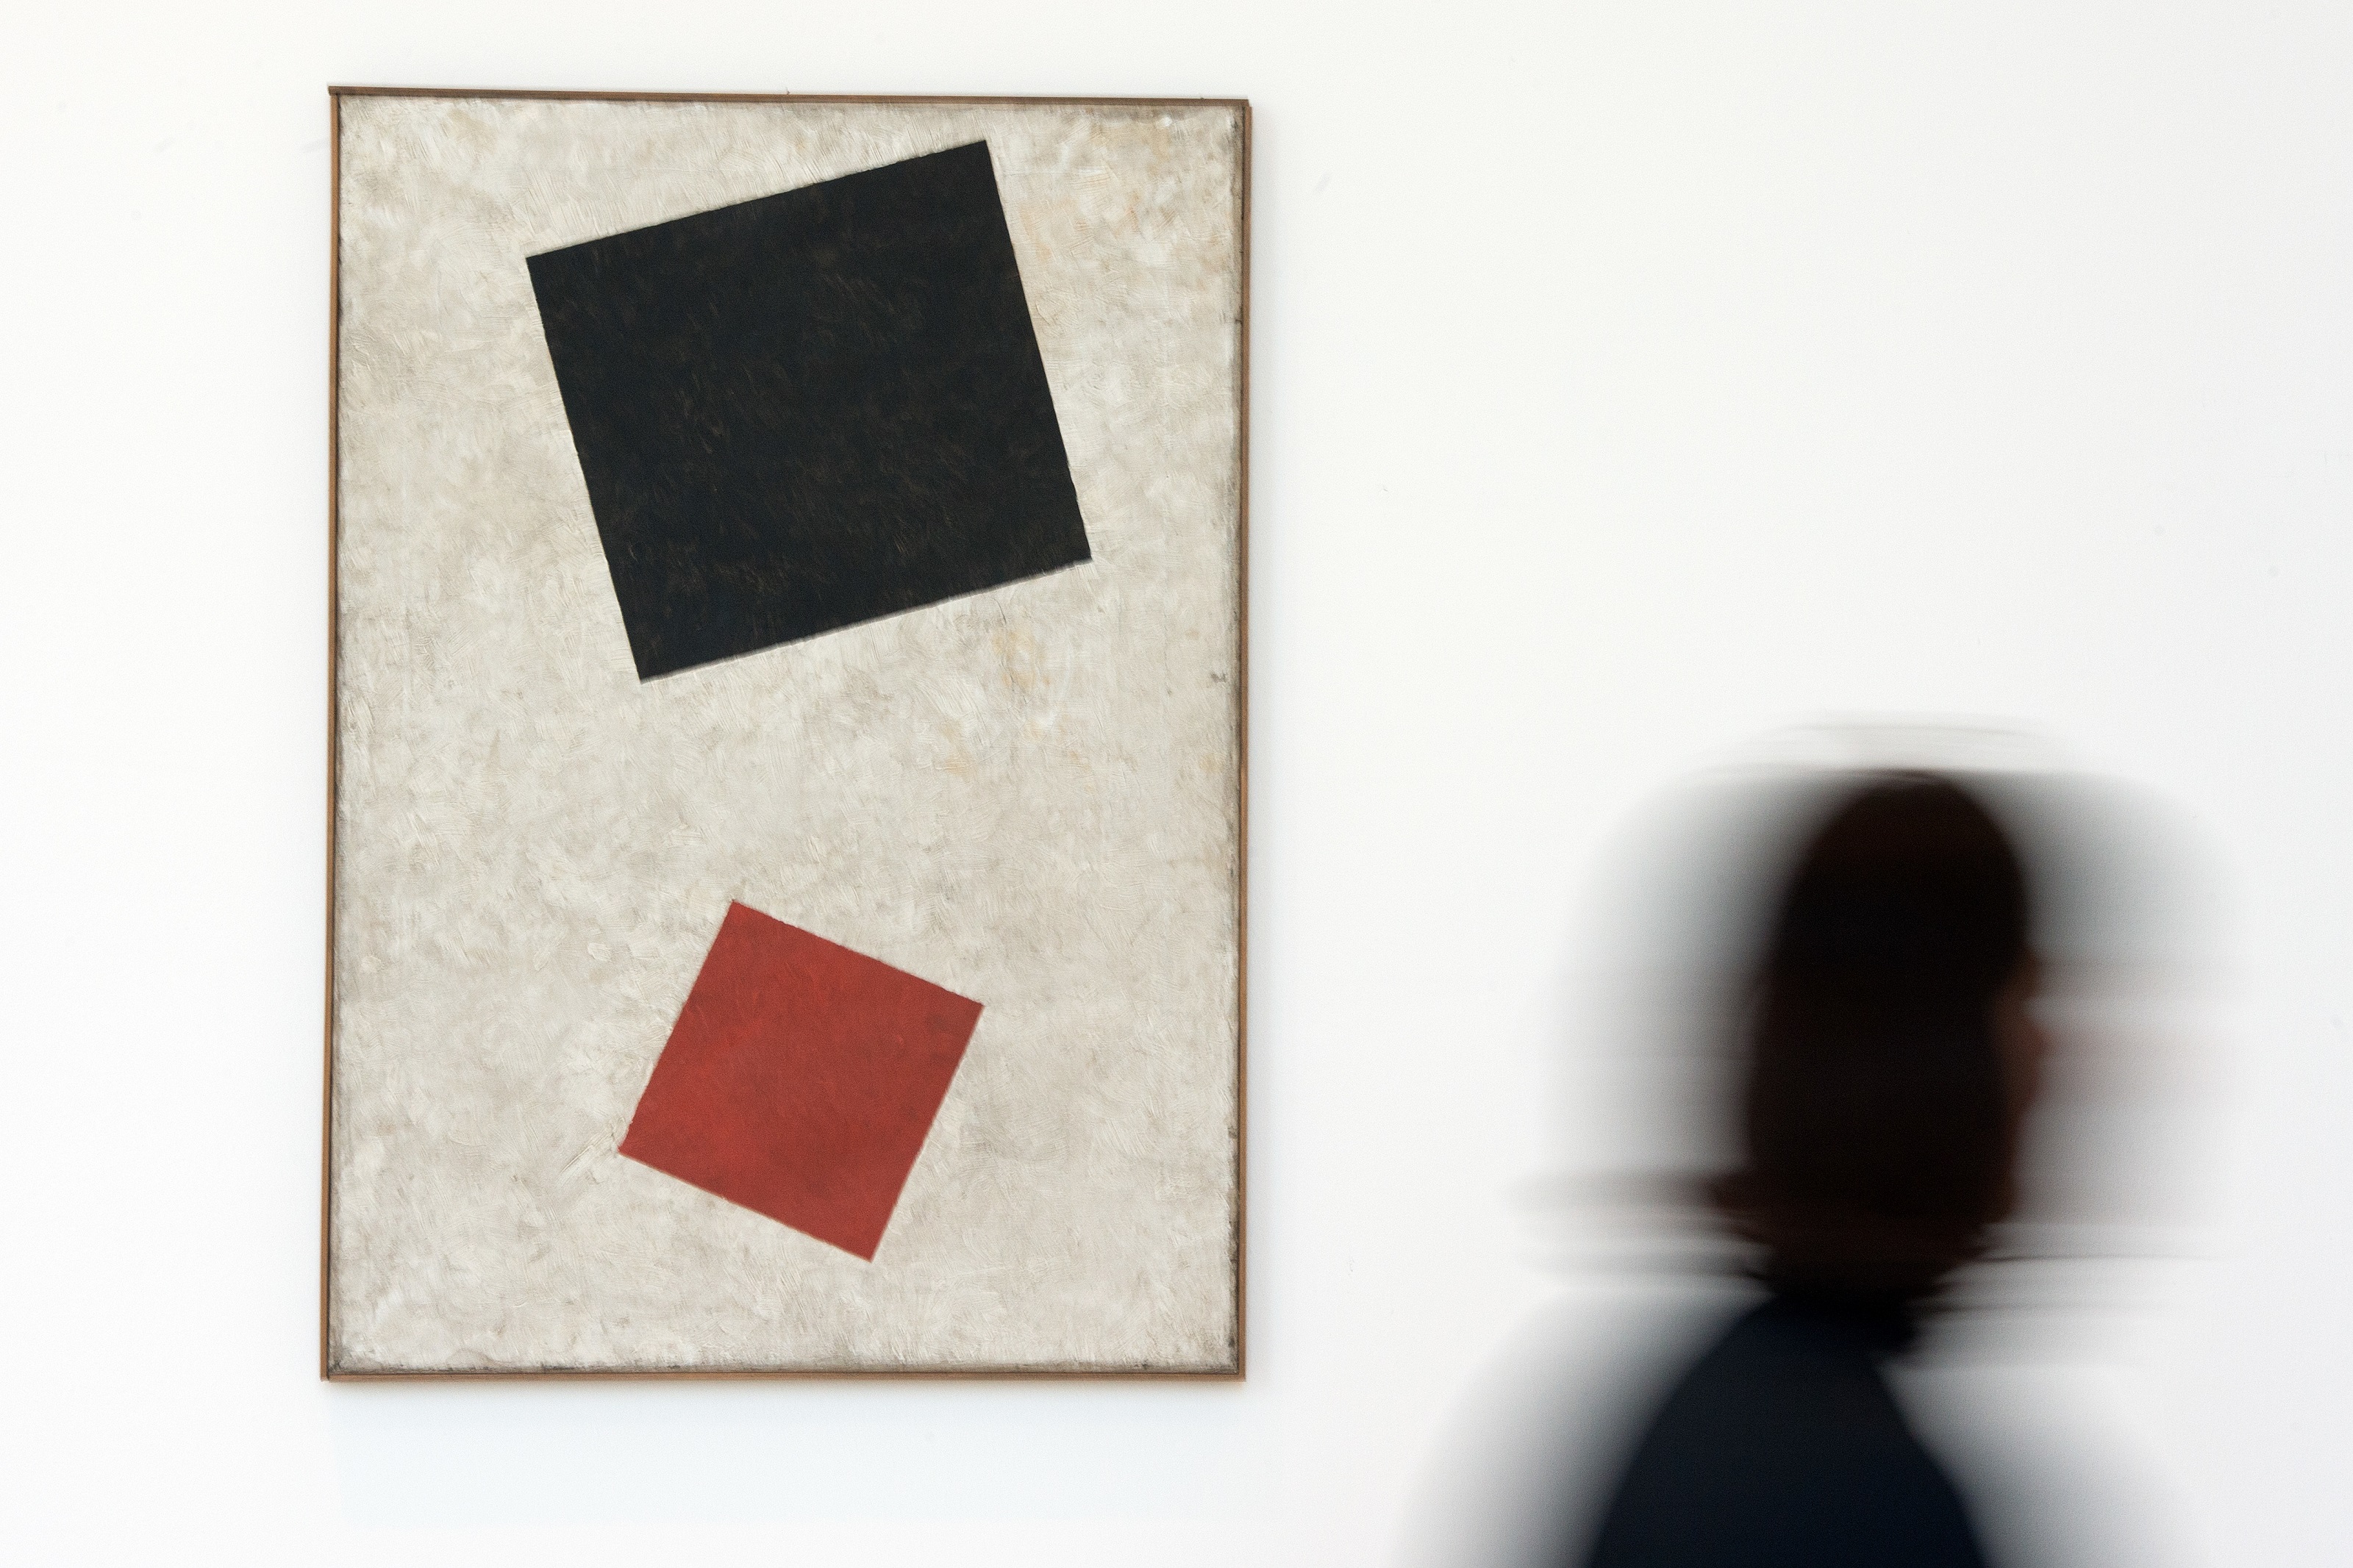 «Schwarzes Rechteck und rotes Quadrat» von Kasimir Malewitsch aus dem Jahr 1915 ist in der Kunstsammlung Nordrhein-Westfalen zu sehen.